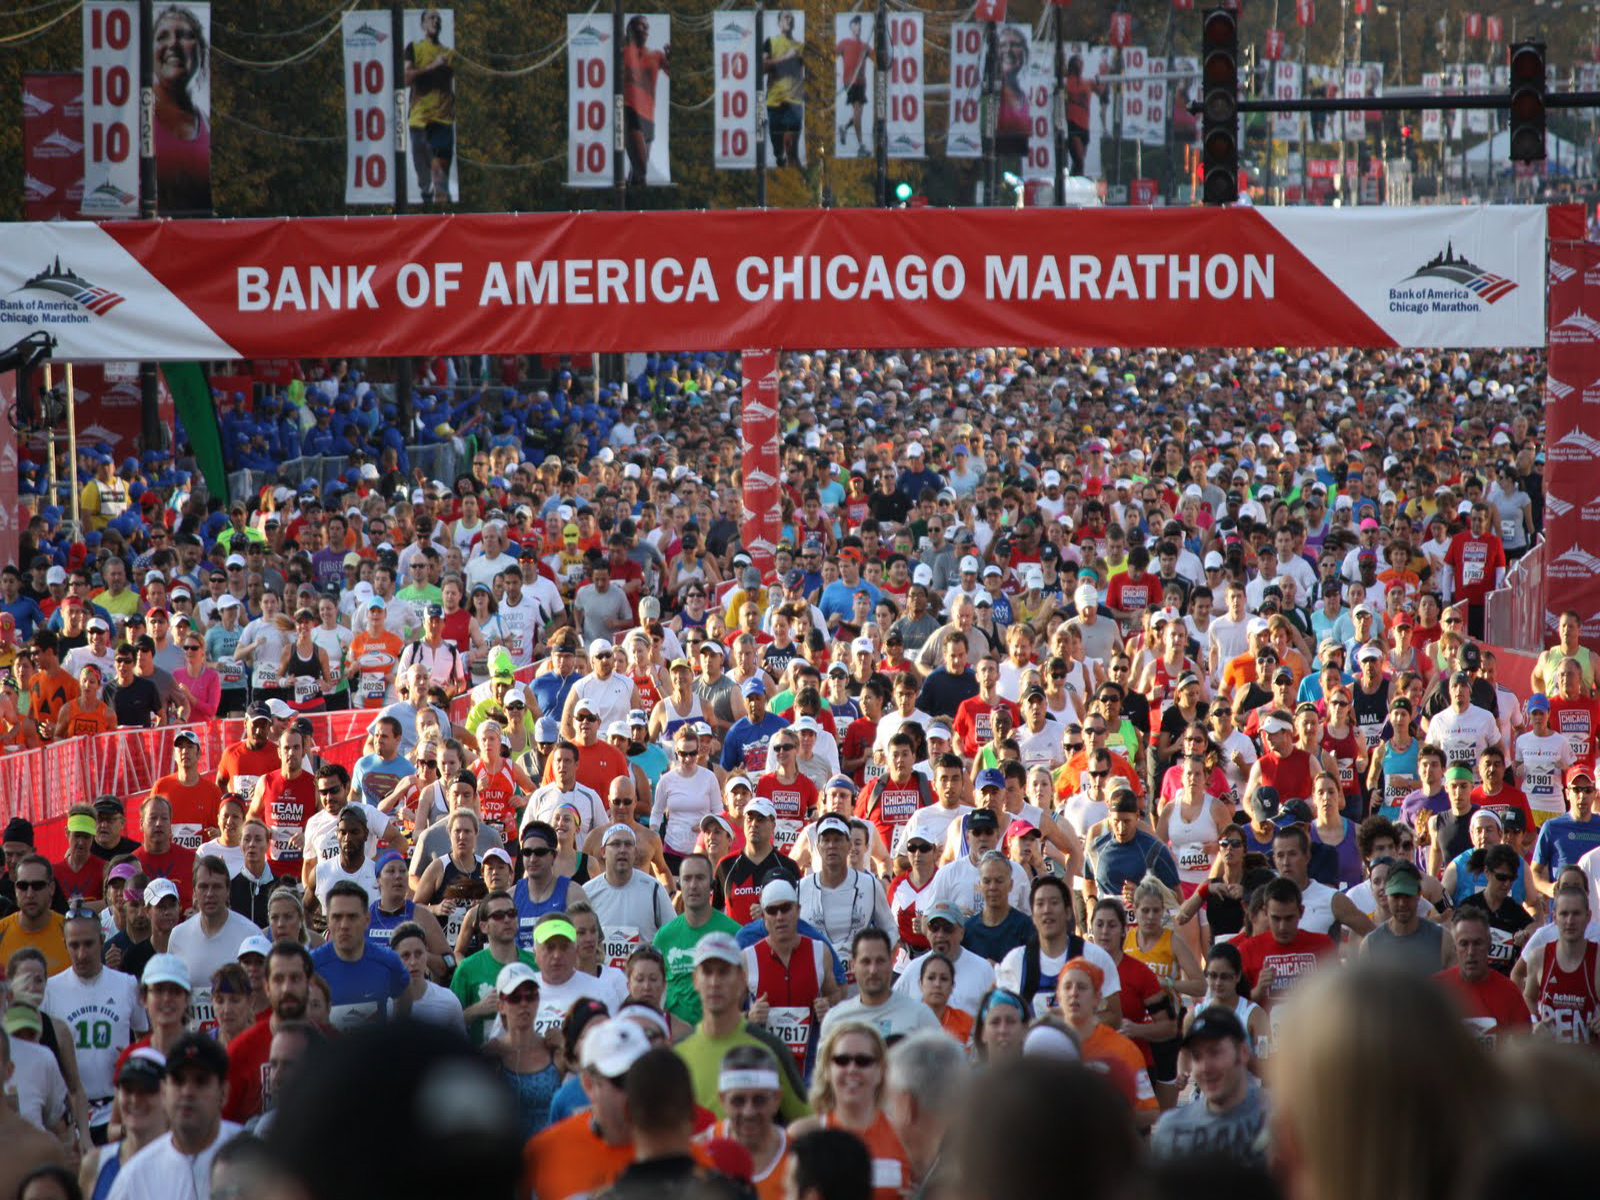 Chicago Marathon Registration Info Released